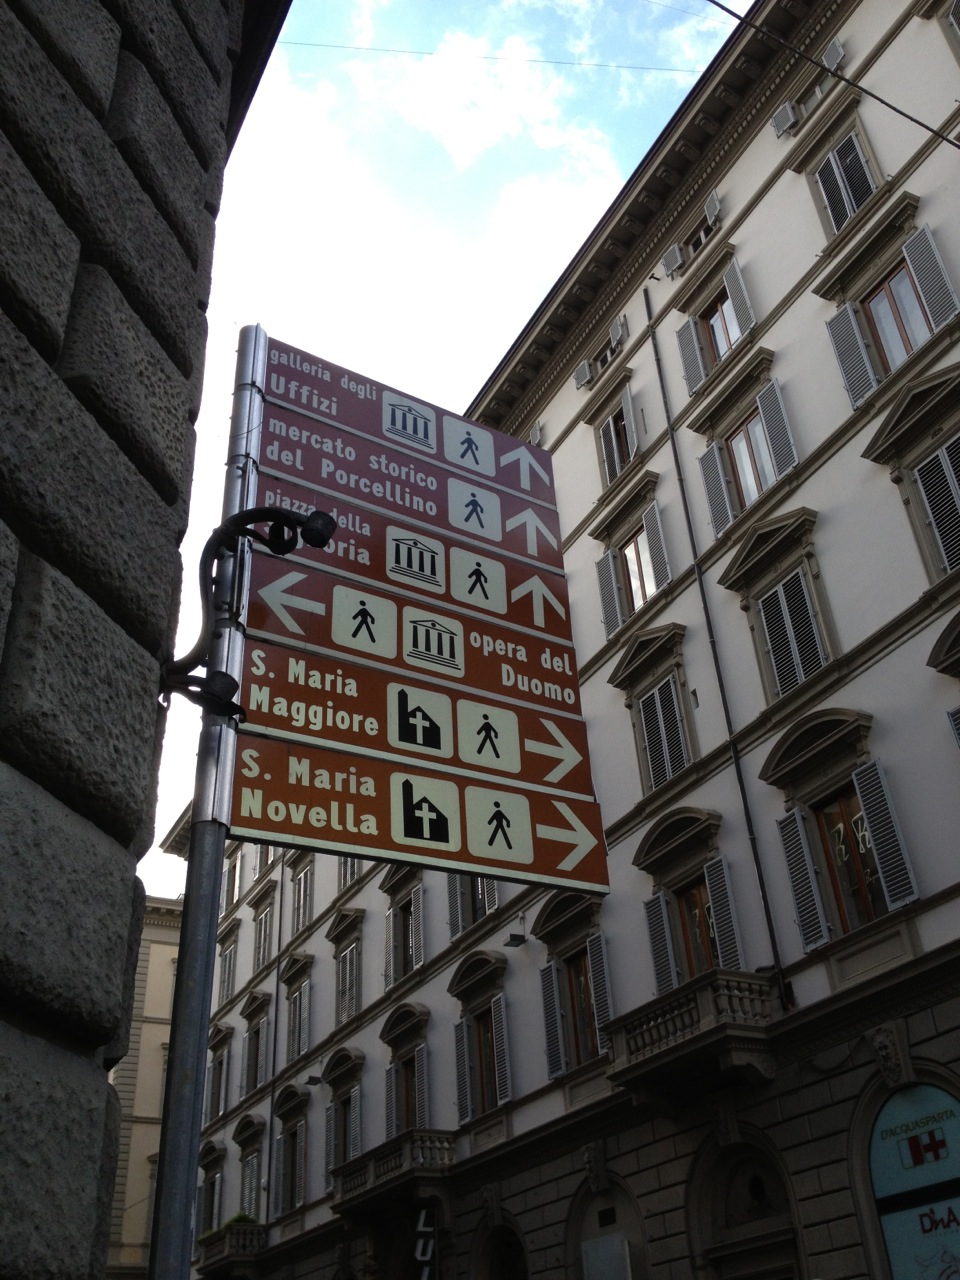 Indicazioni stradali a Firenze